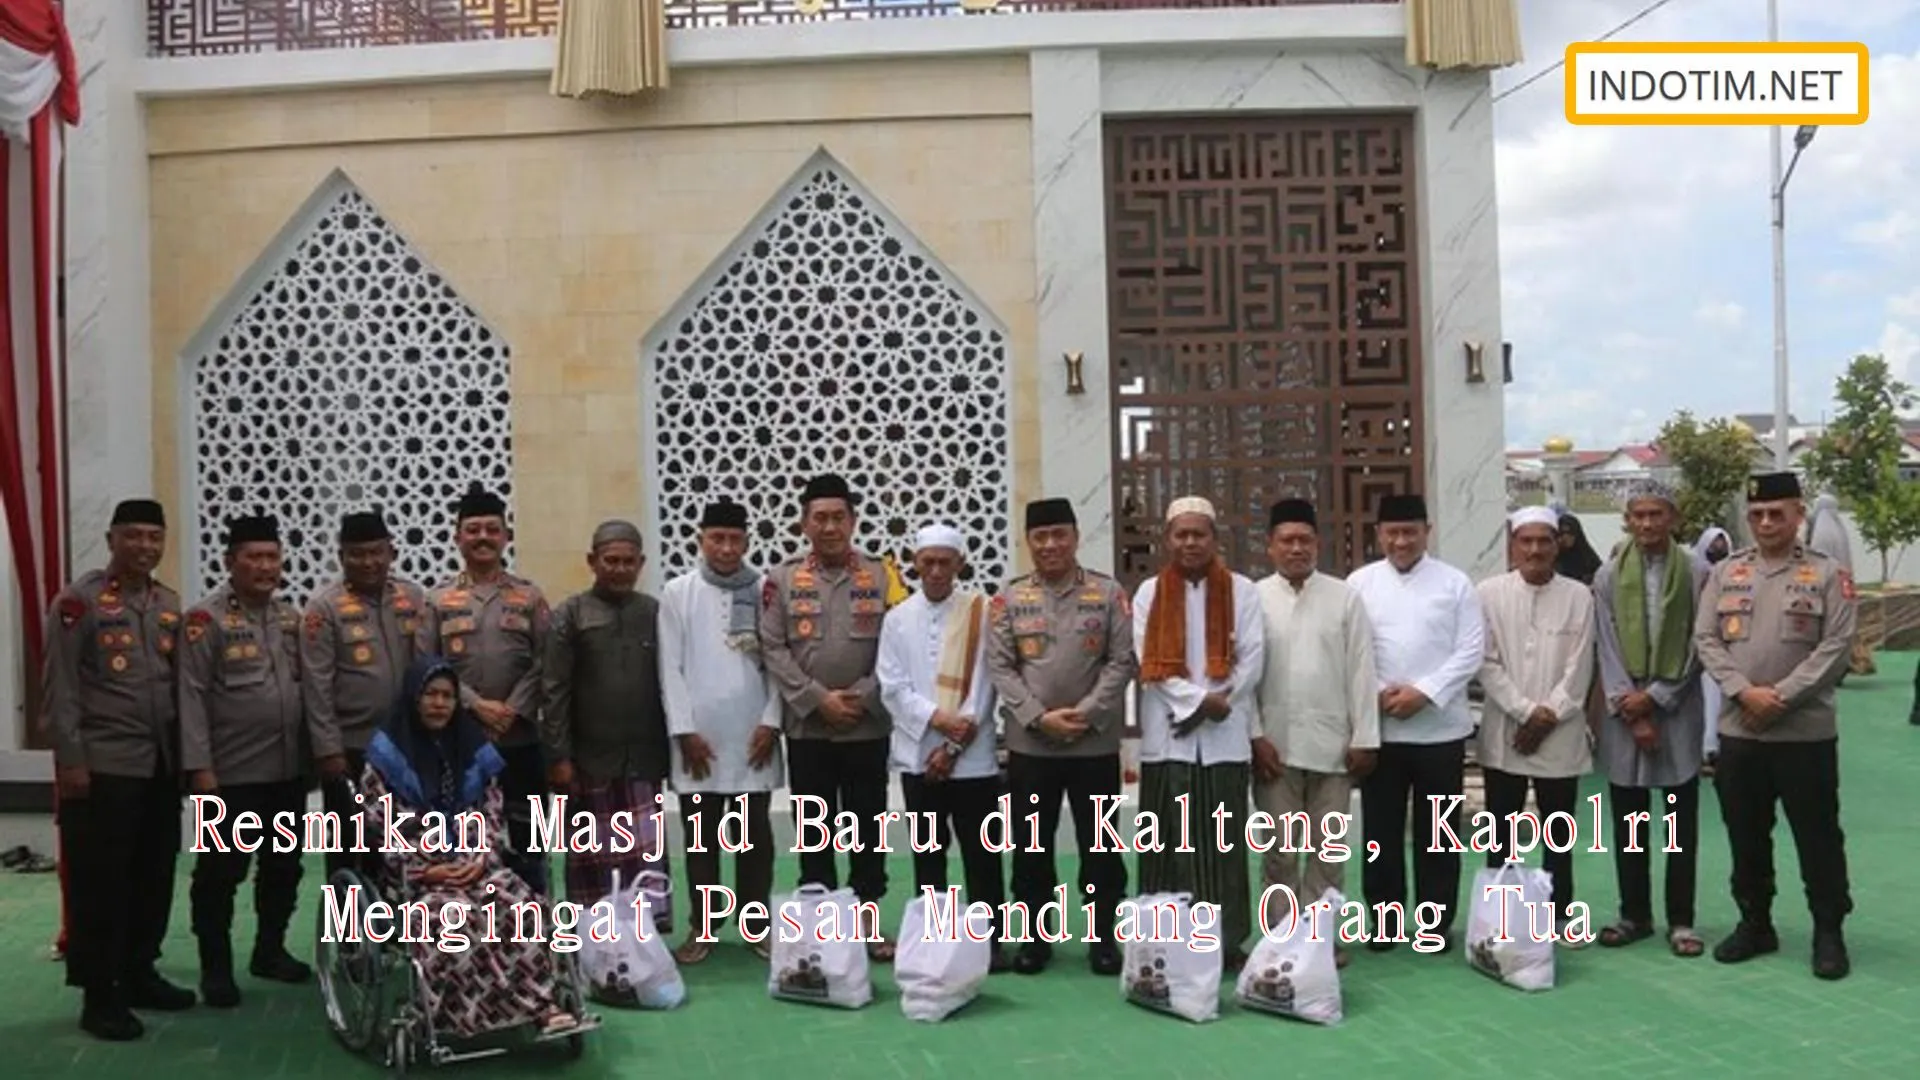 Resmikan Masjid Baru di Kalteng, Kapolri Mengingat Pesan Mendiang Orang Tua